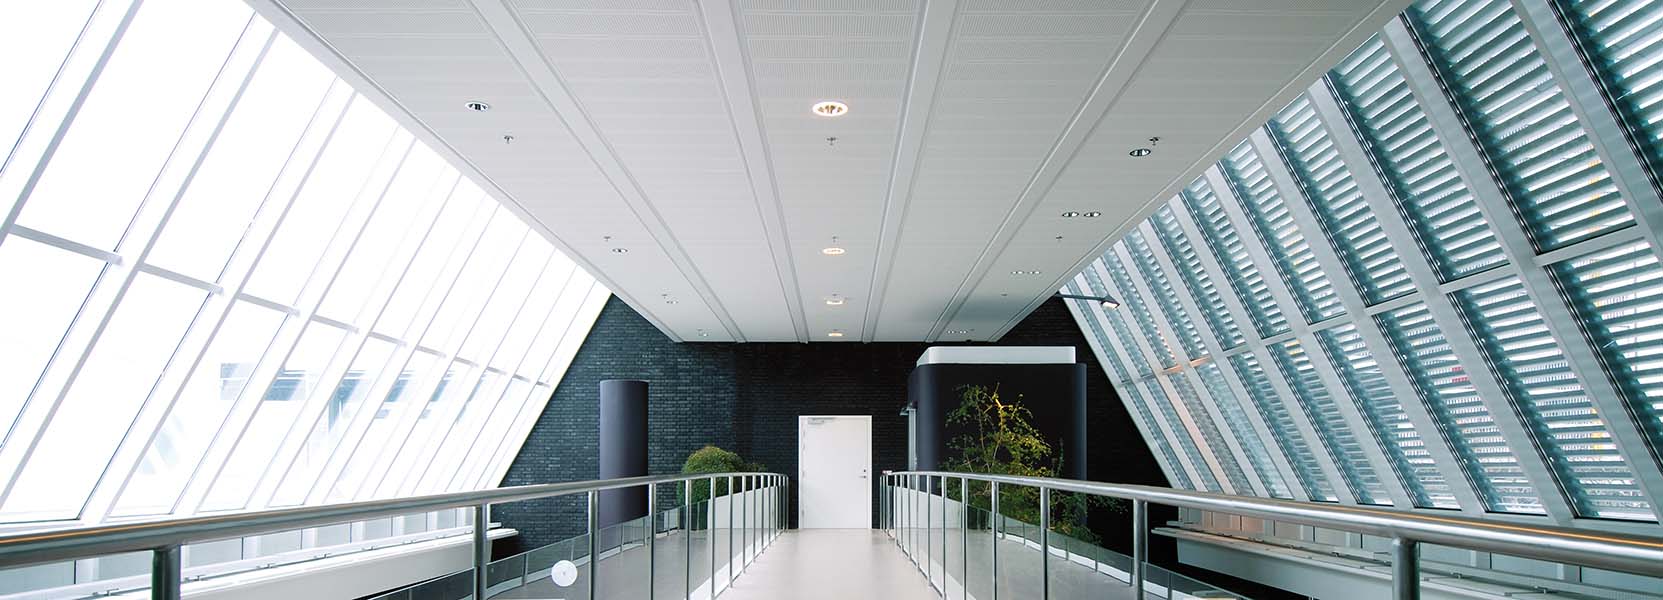 Knauf Corridor 400 - Walkway application